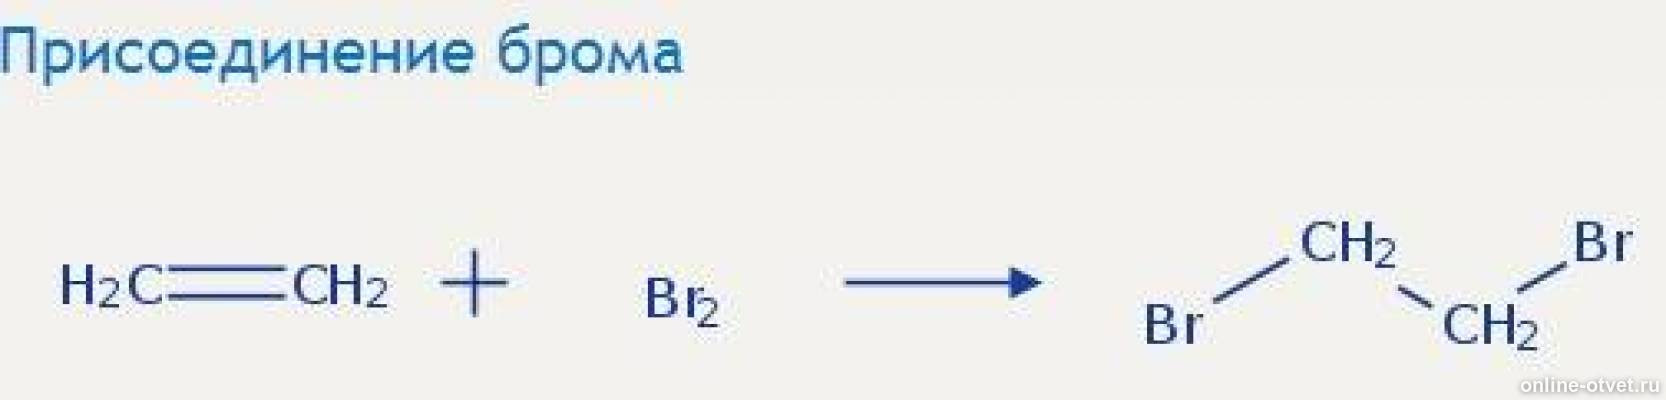 Присоединение брома. Этанол+CL. Реакция присоединения брома. C2h4 = диэтиловый эфир. Ацетилен дихлорэтан реакция